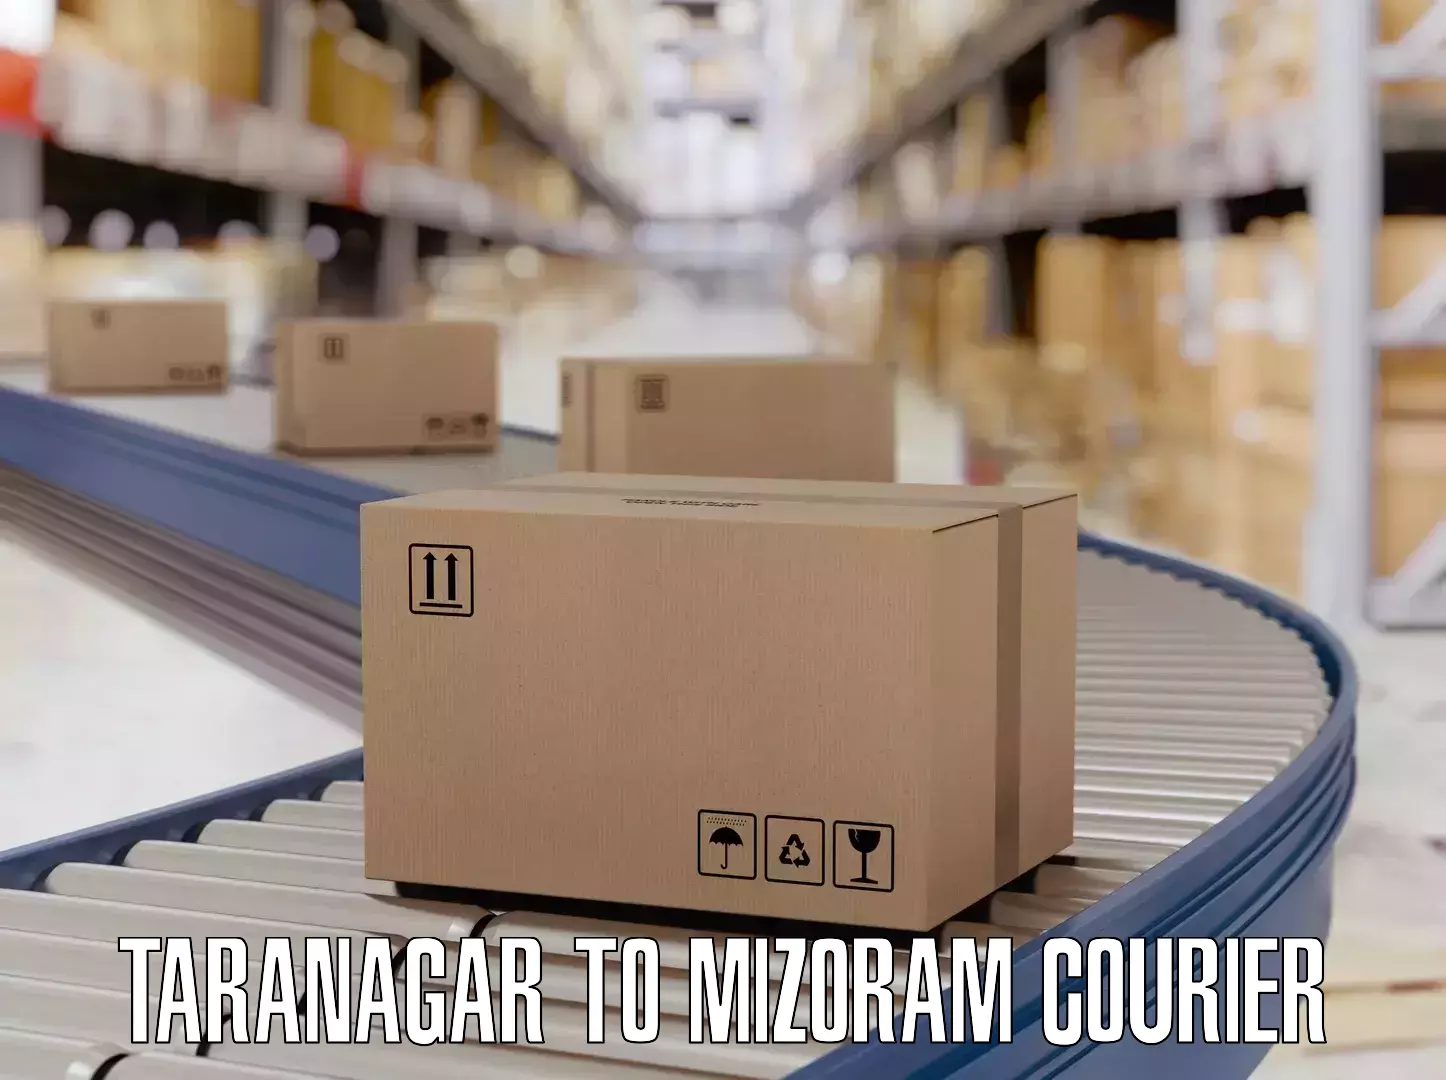 Luggage shipping efficiency Taranagar to Darlawn